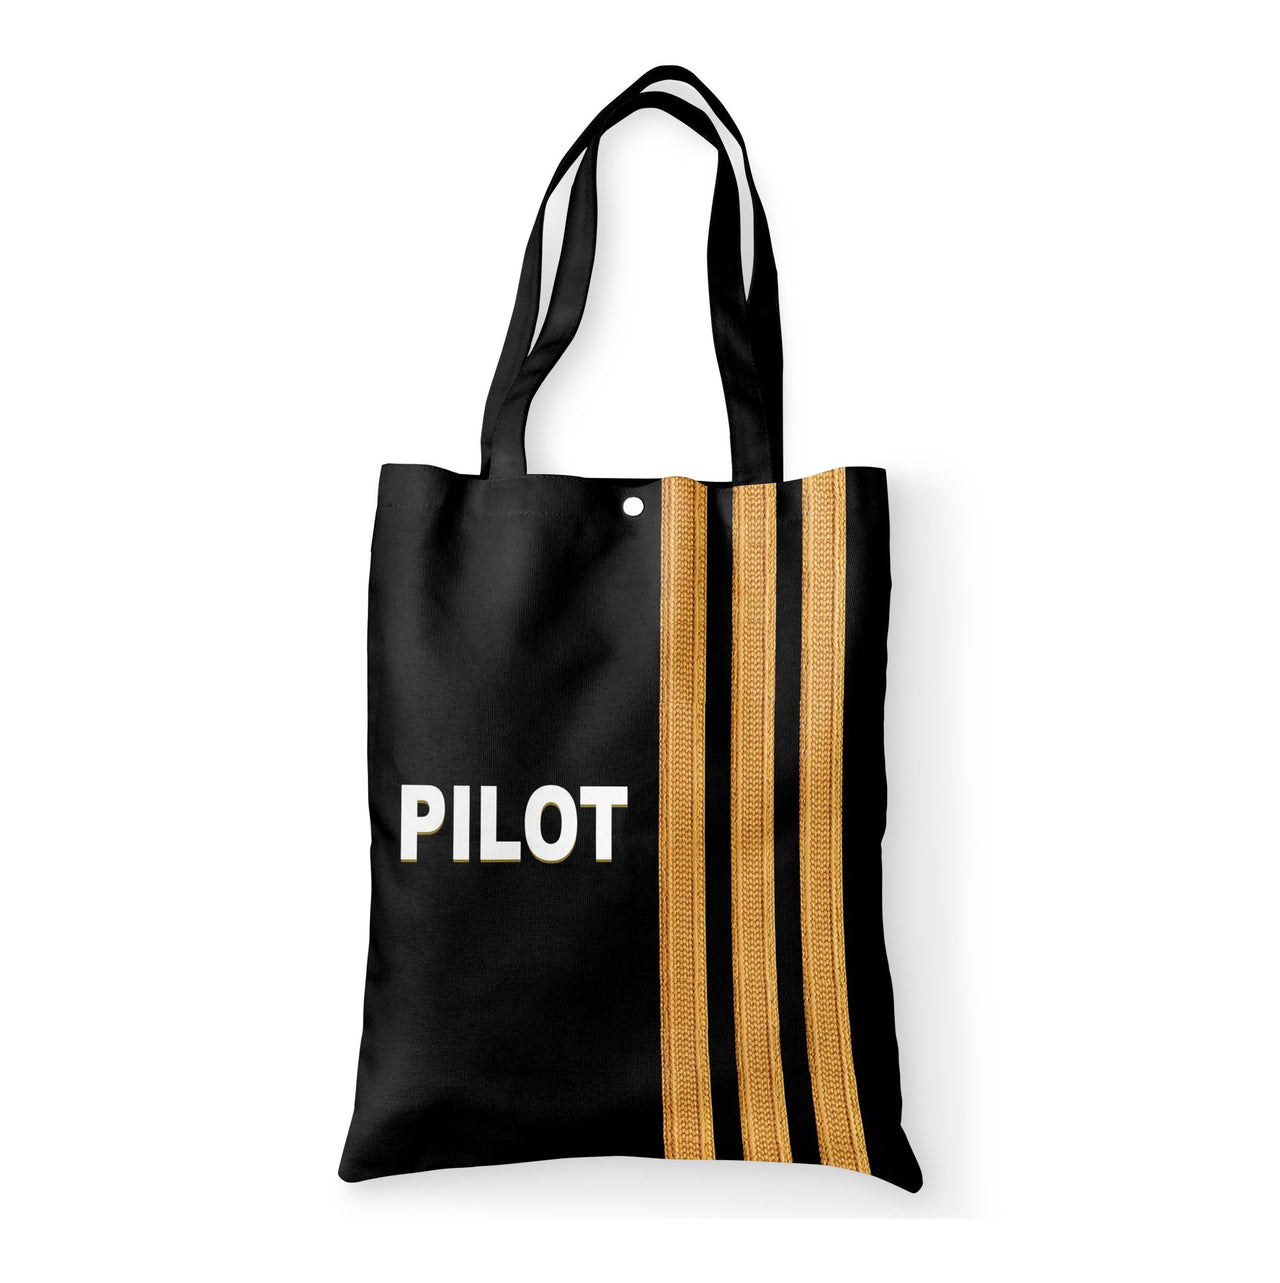 PILOT & Epaulettes 3 Lines Designed Tote Bags